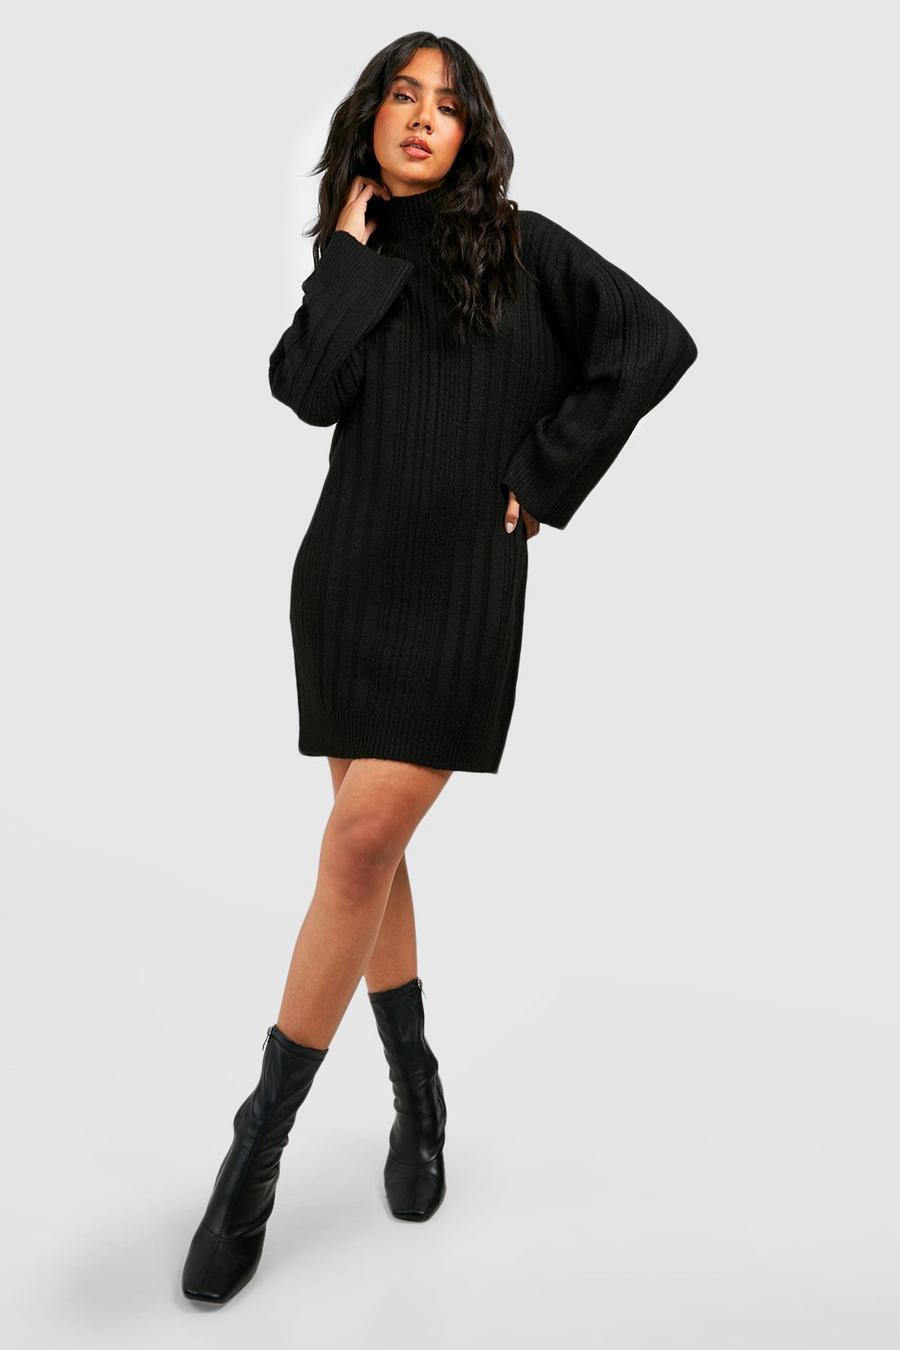 Black Soft Mixed Rib Knit Jumper Dress